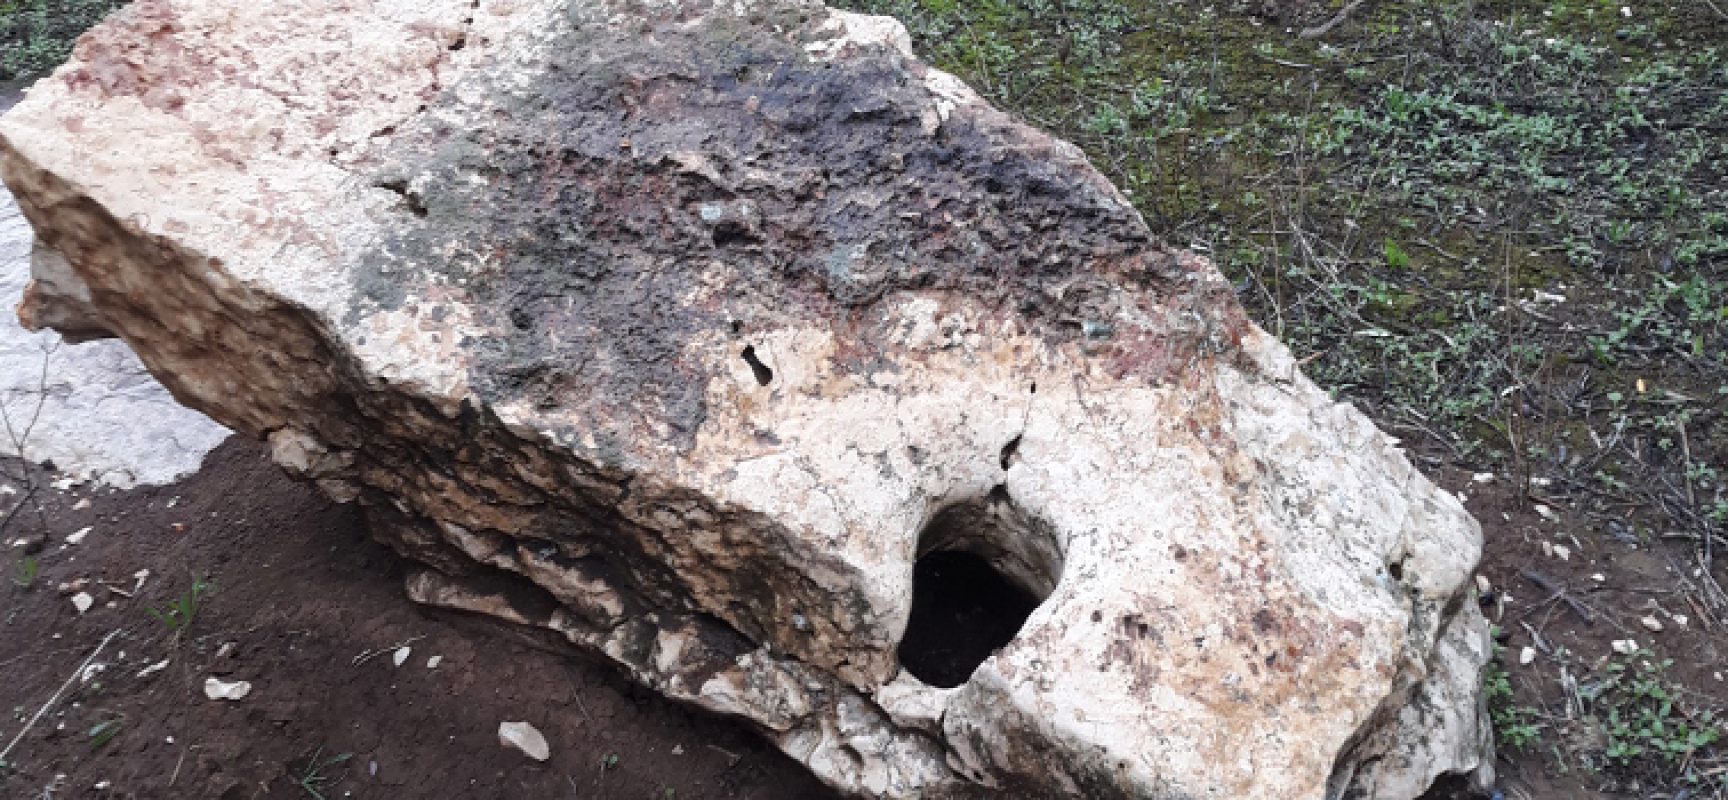 Menhir in Contrada Santa Croce distrutto, la denuncia di un lettore